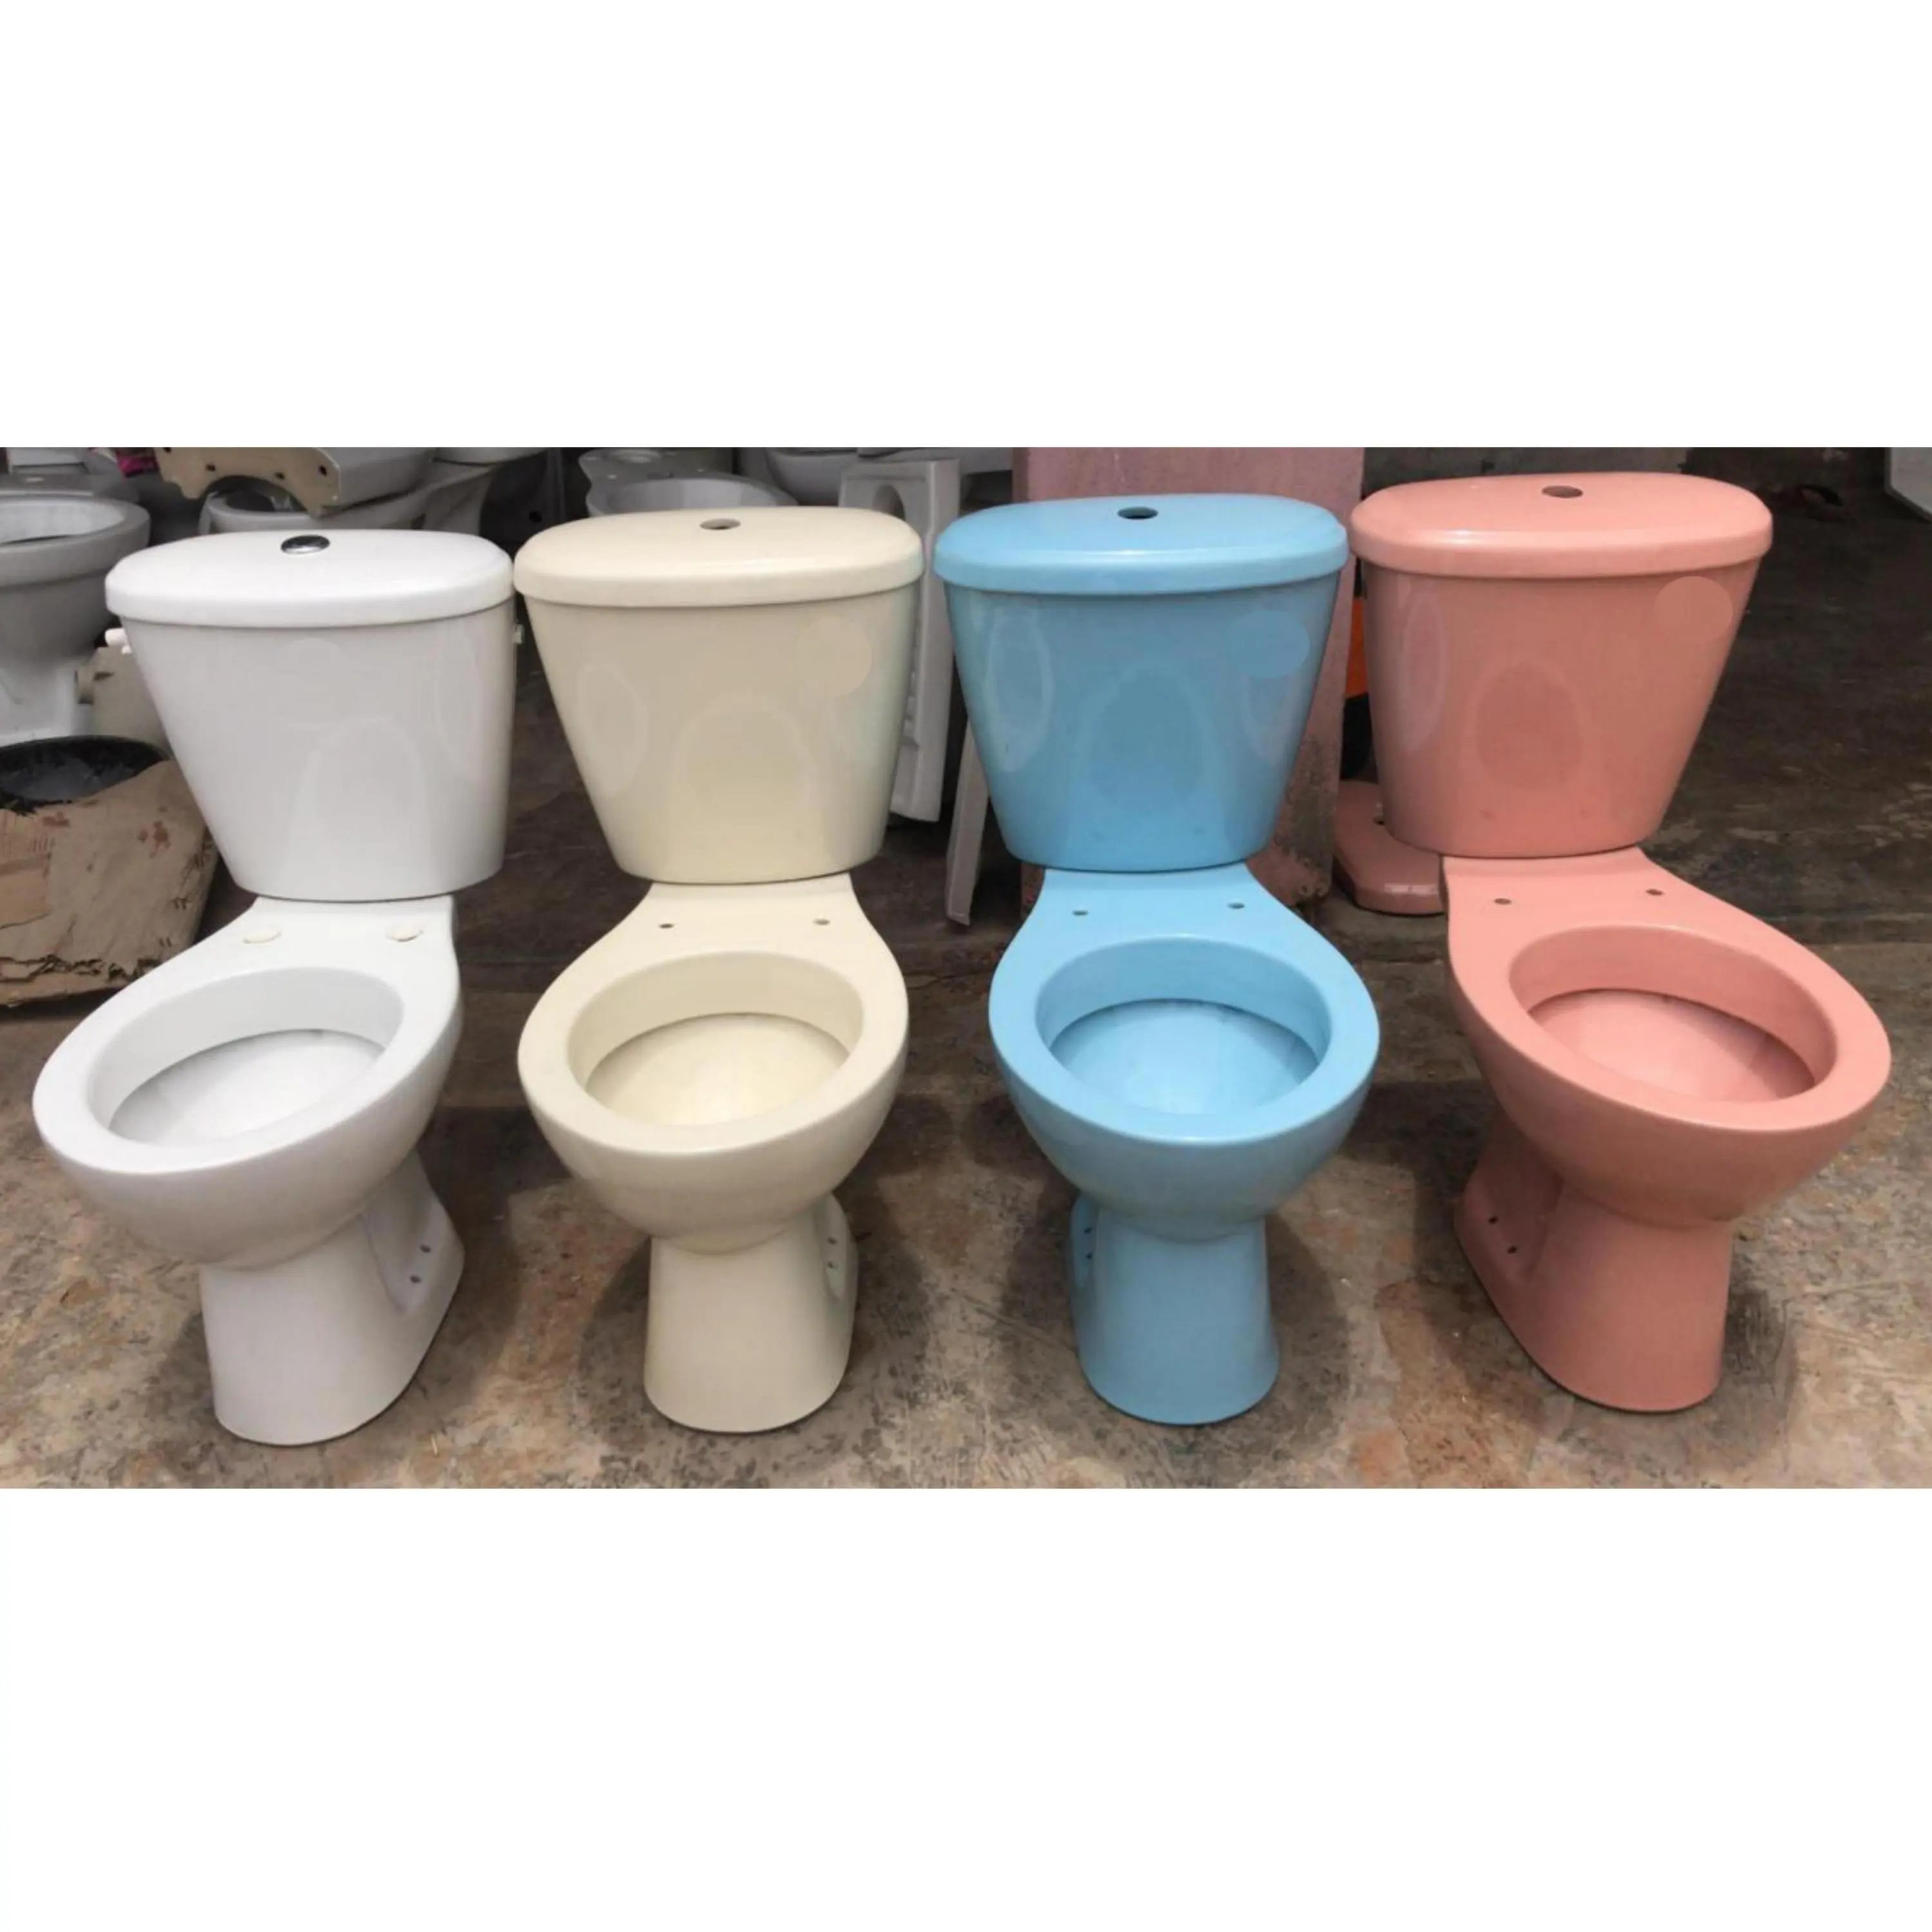 Sanitär artikel Elfenbein Farb designer Zweiteiliger Wasser klosett Kommode Toiletten sitz aus Indien 1. Klasse Premium-Qualität Niedrigster Preis